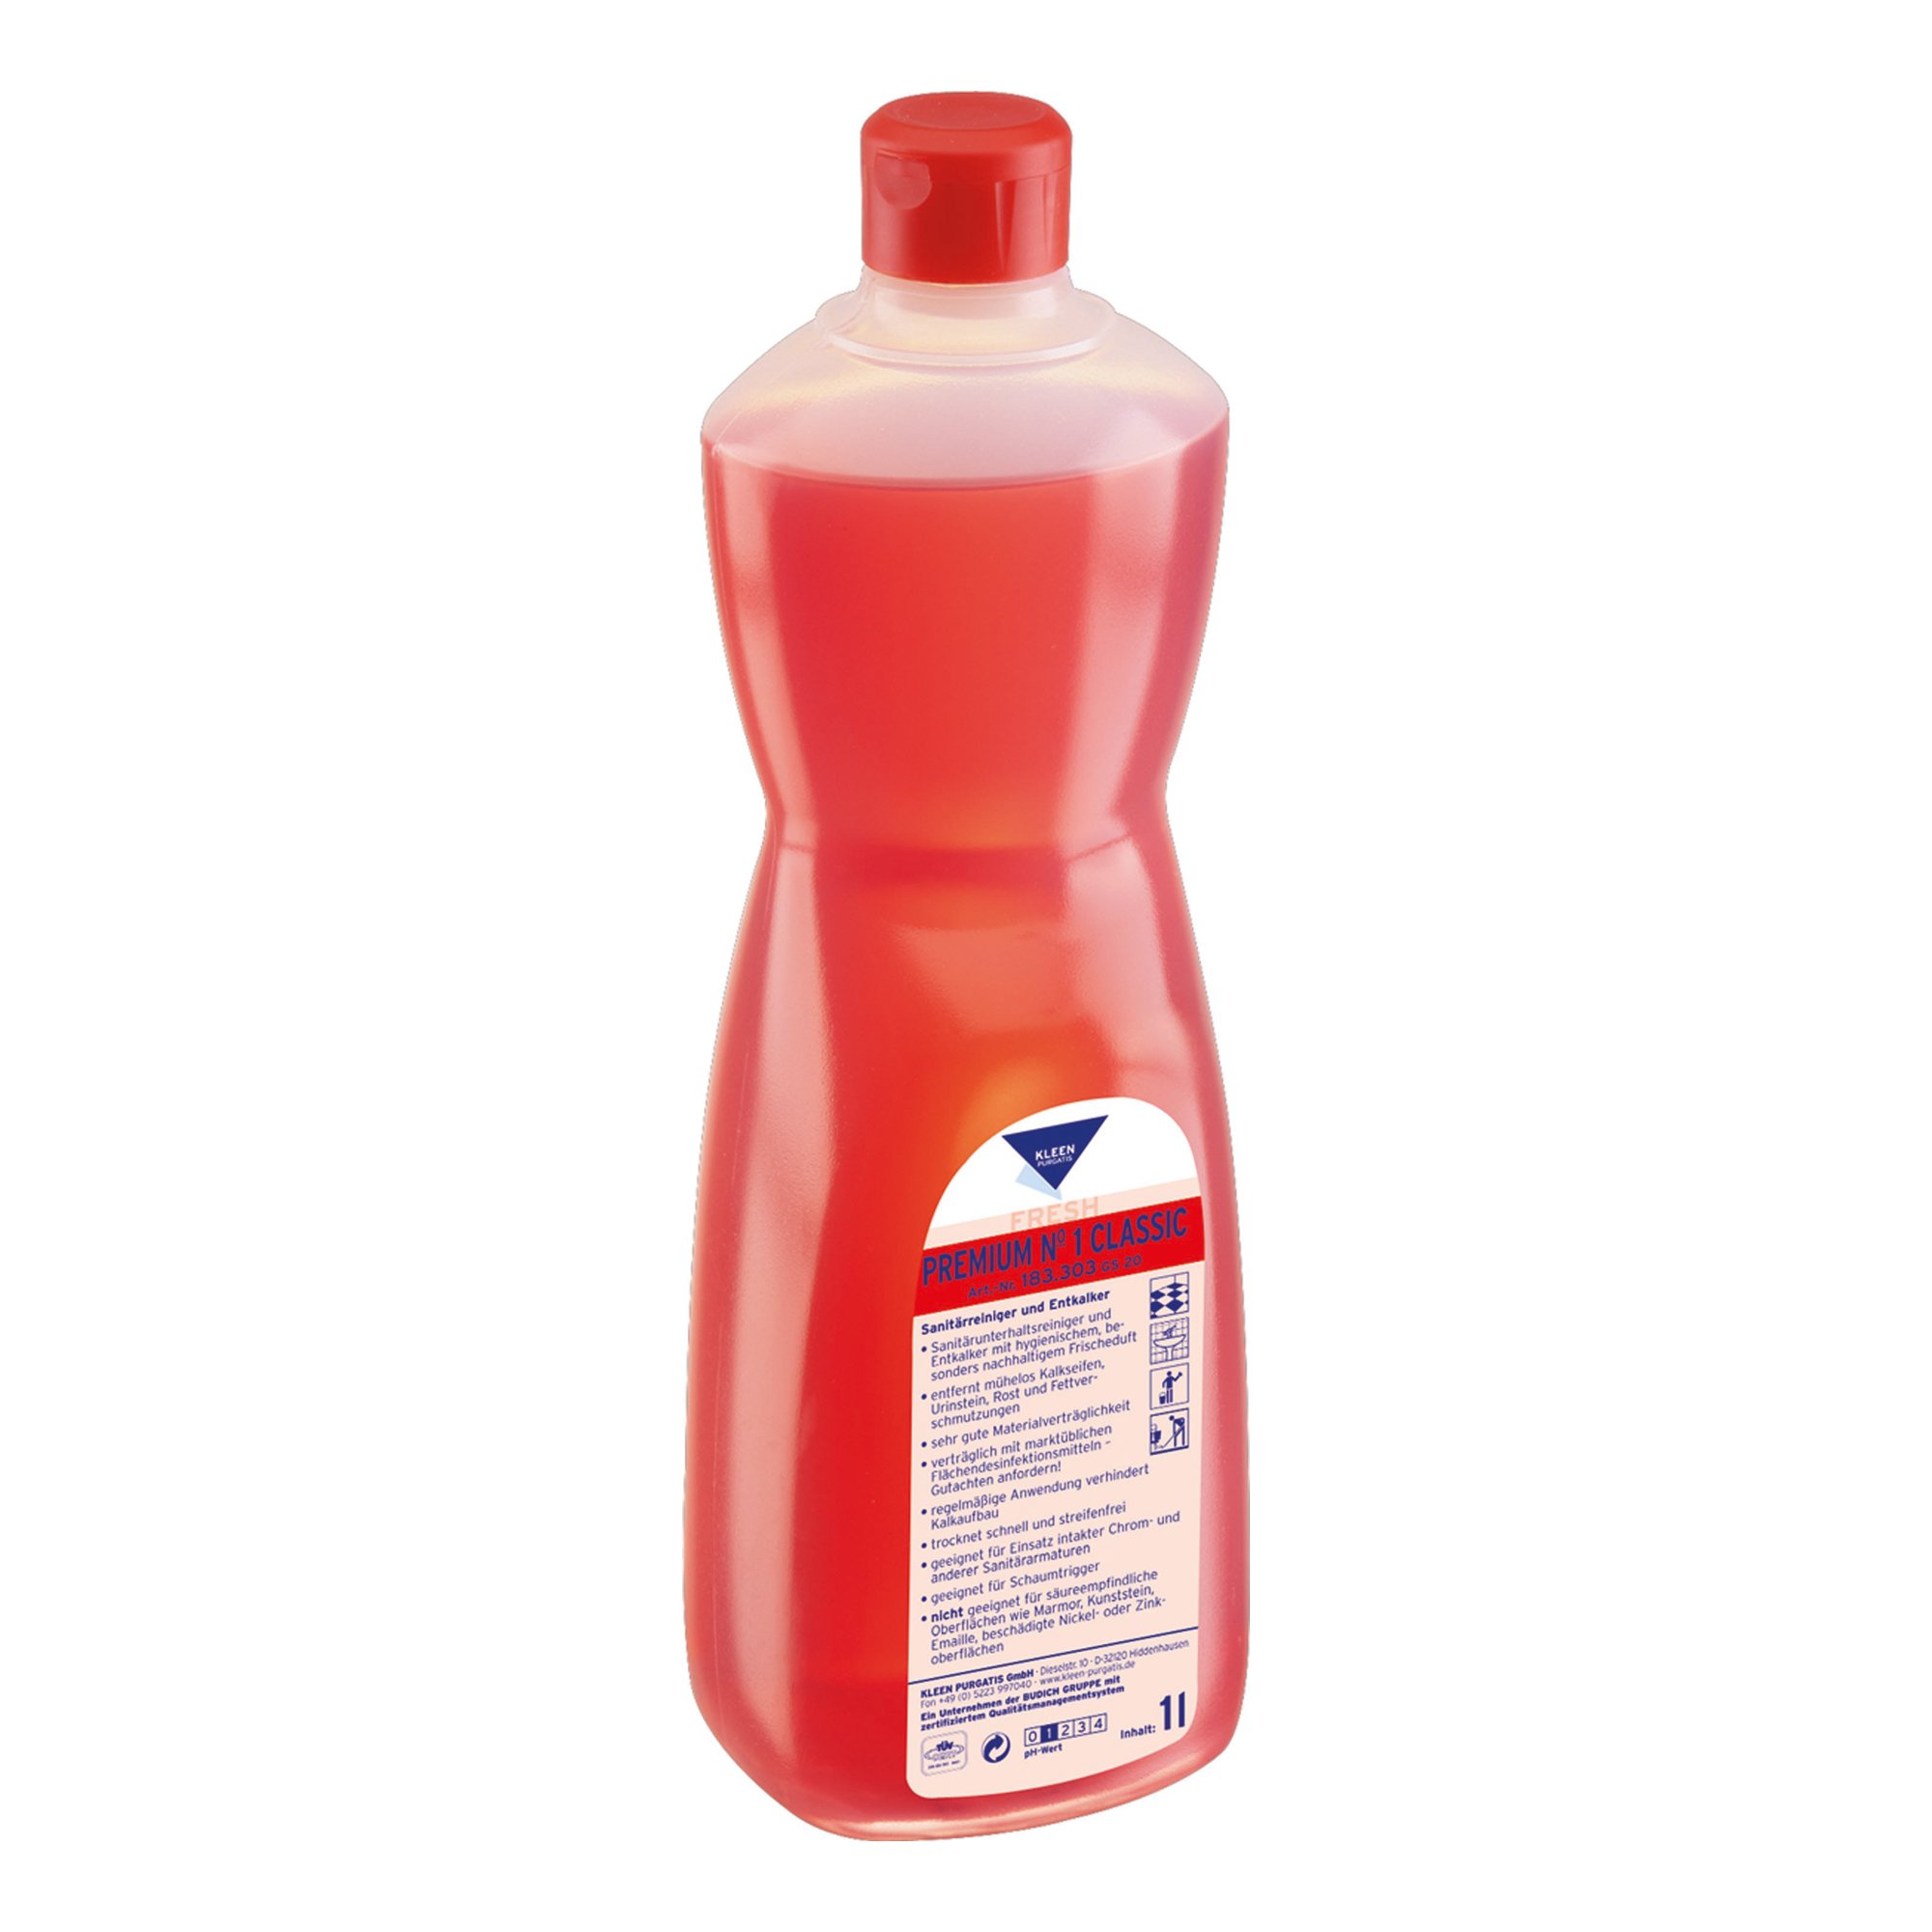 Kleen Purgatis Premium No 1 Classic Sanitärunterhaltsreiniger 1 Liter Flasche 90183303_1